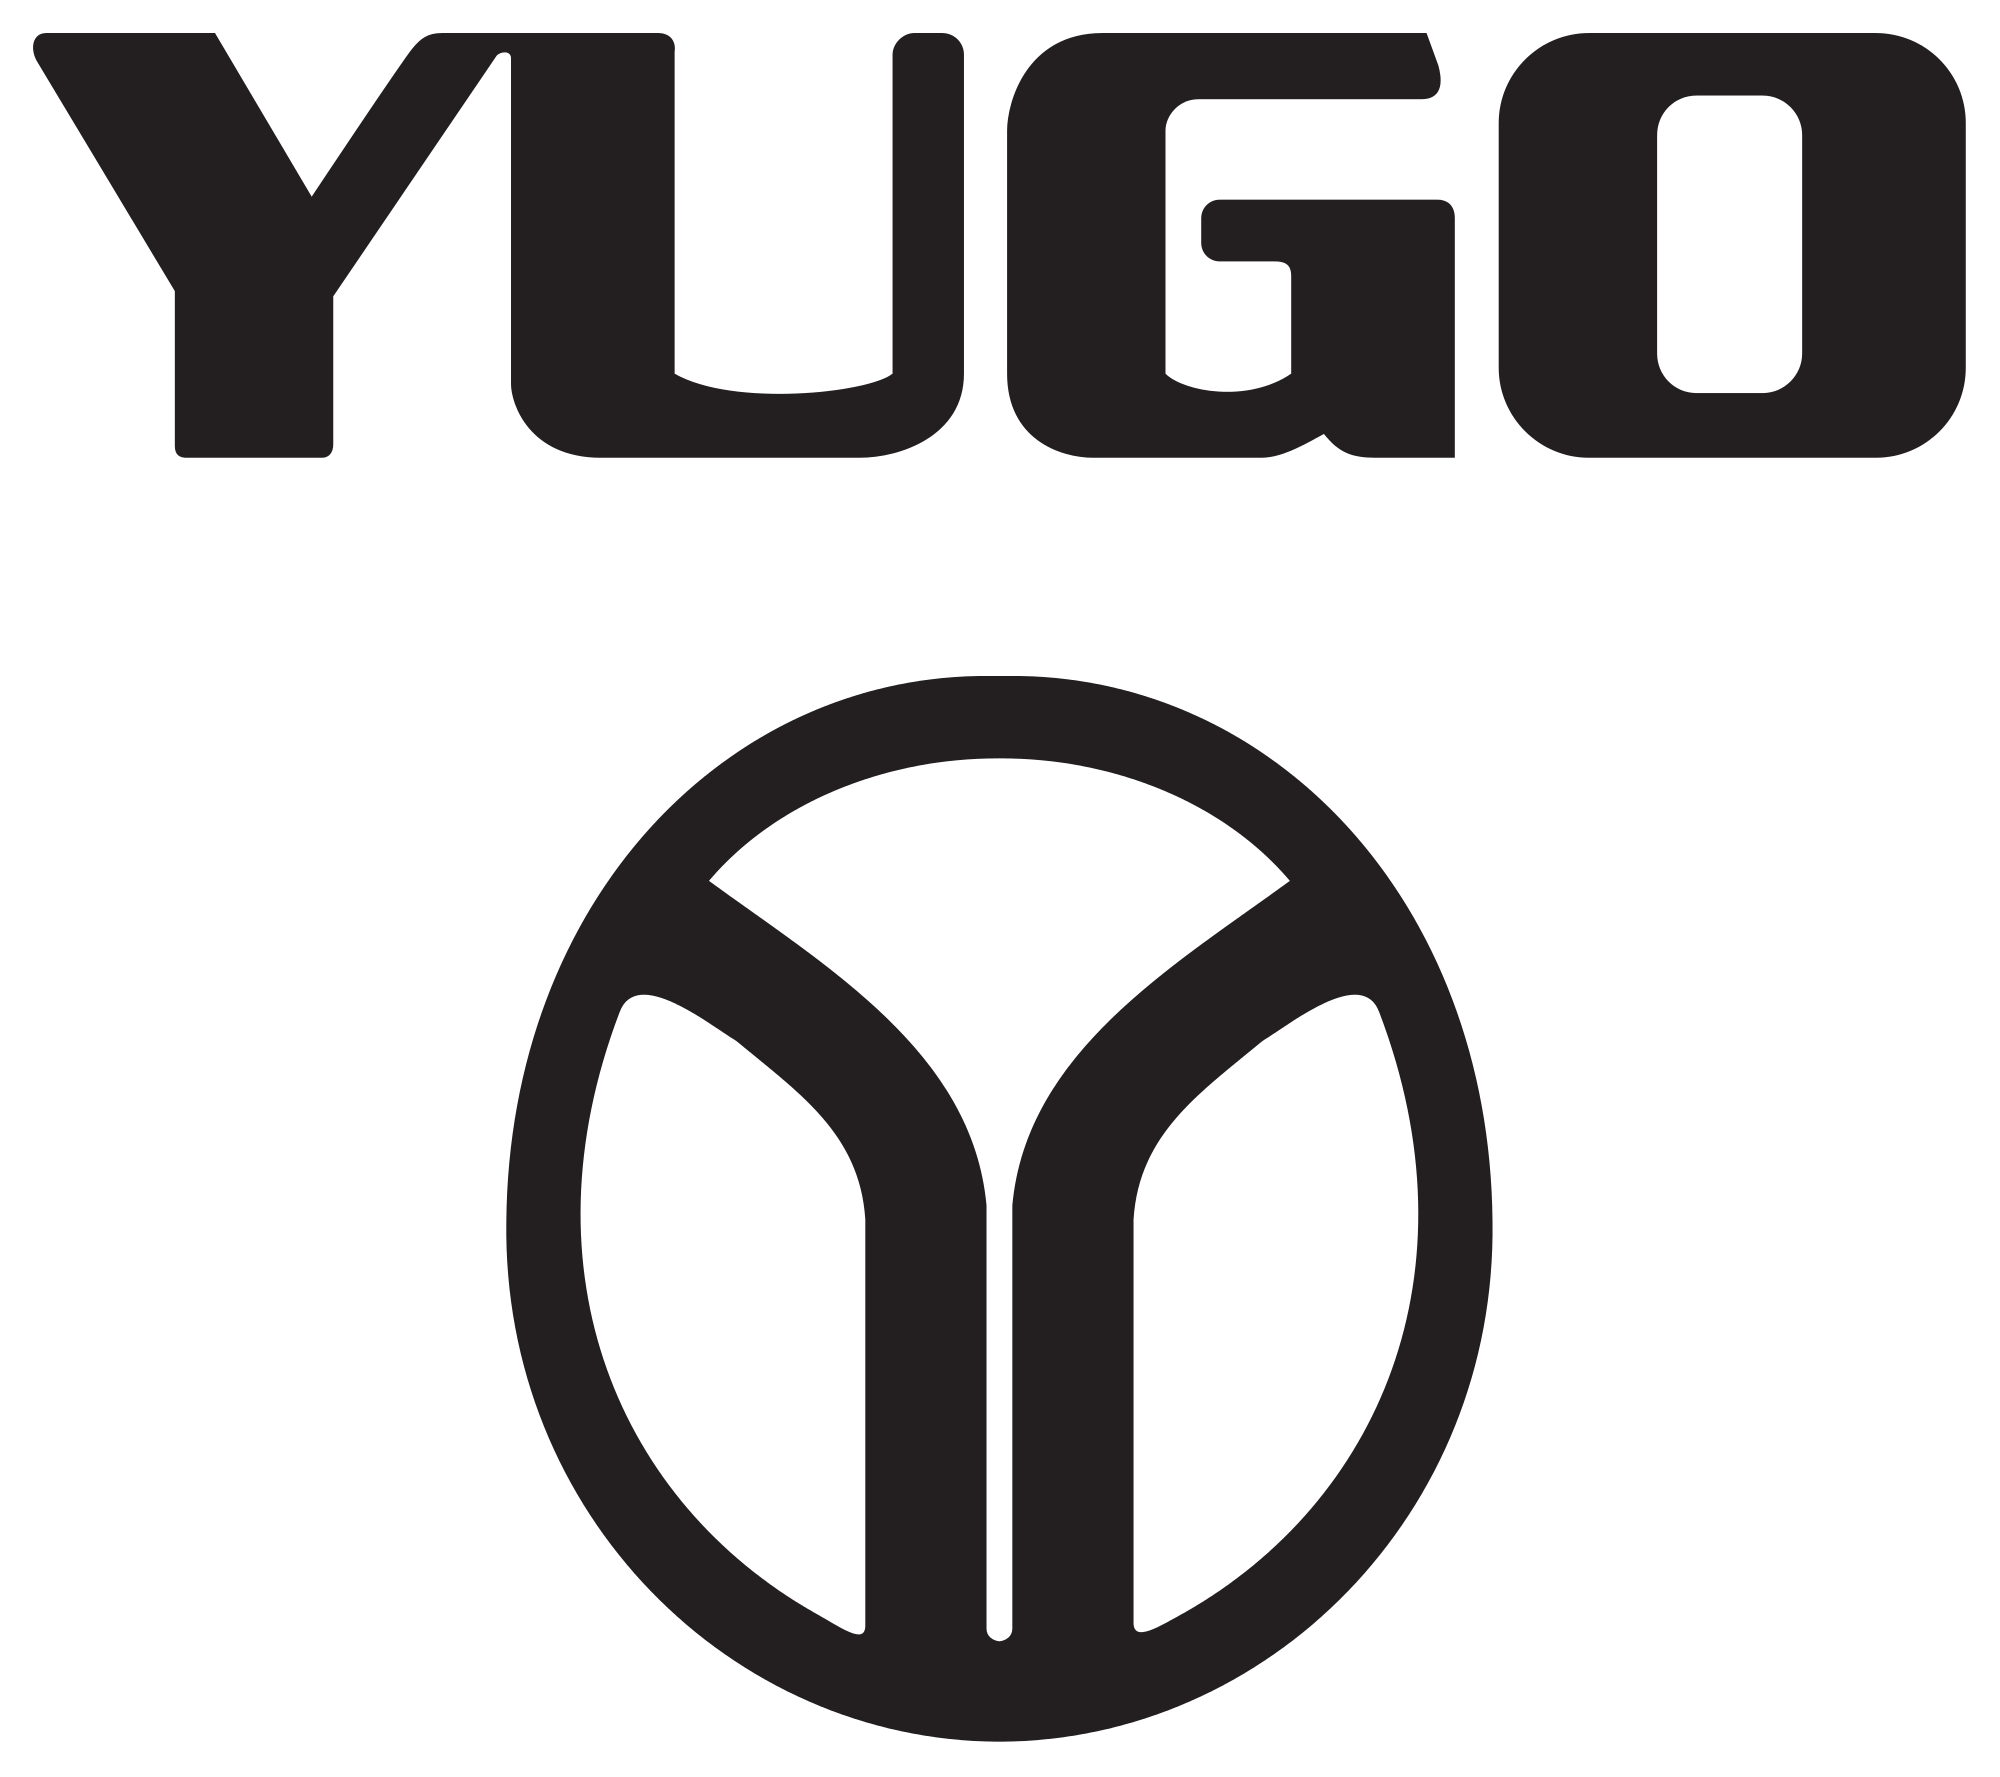 Yugo Logo - File:Yugo-logo.svg - Wikimedia Commons